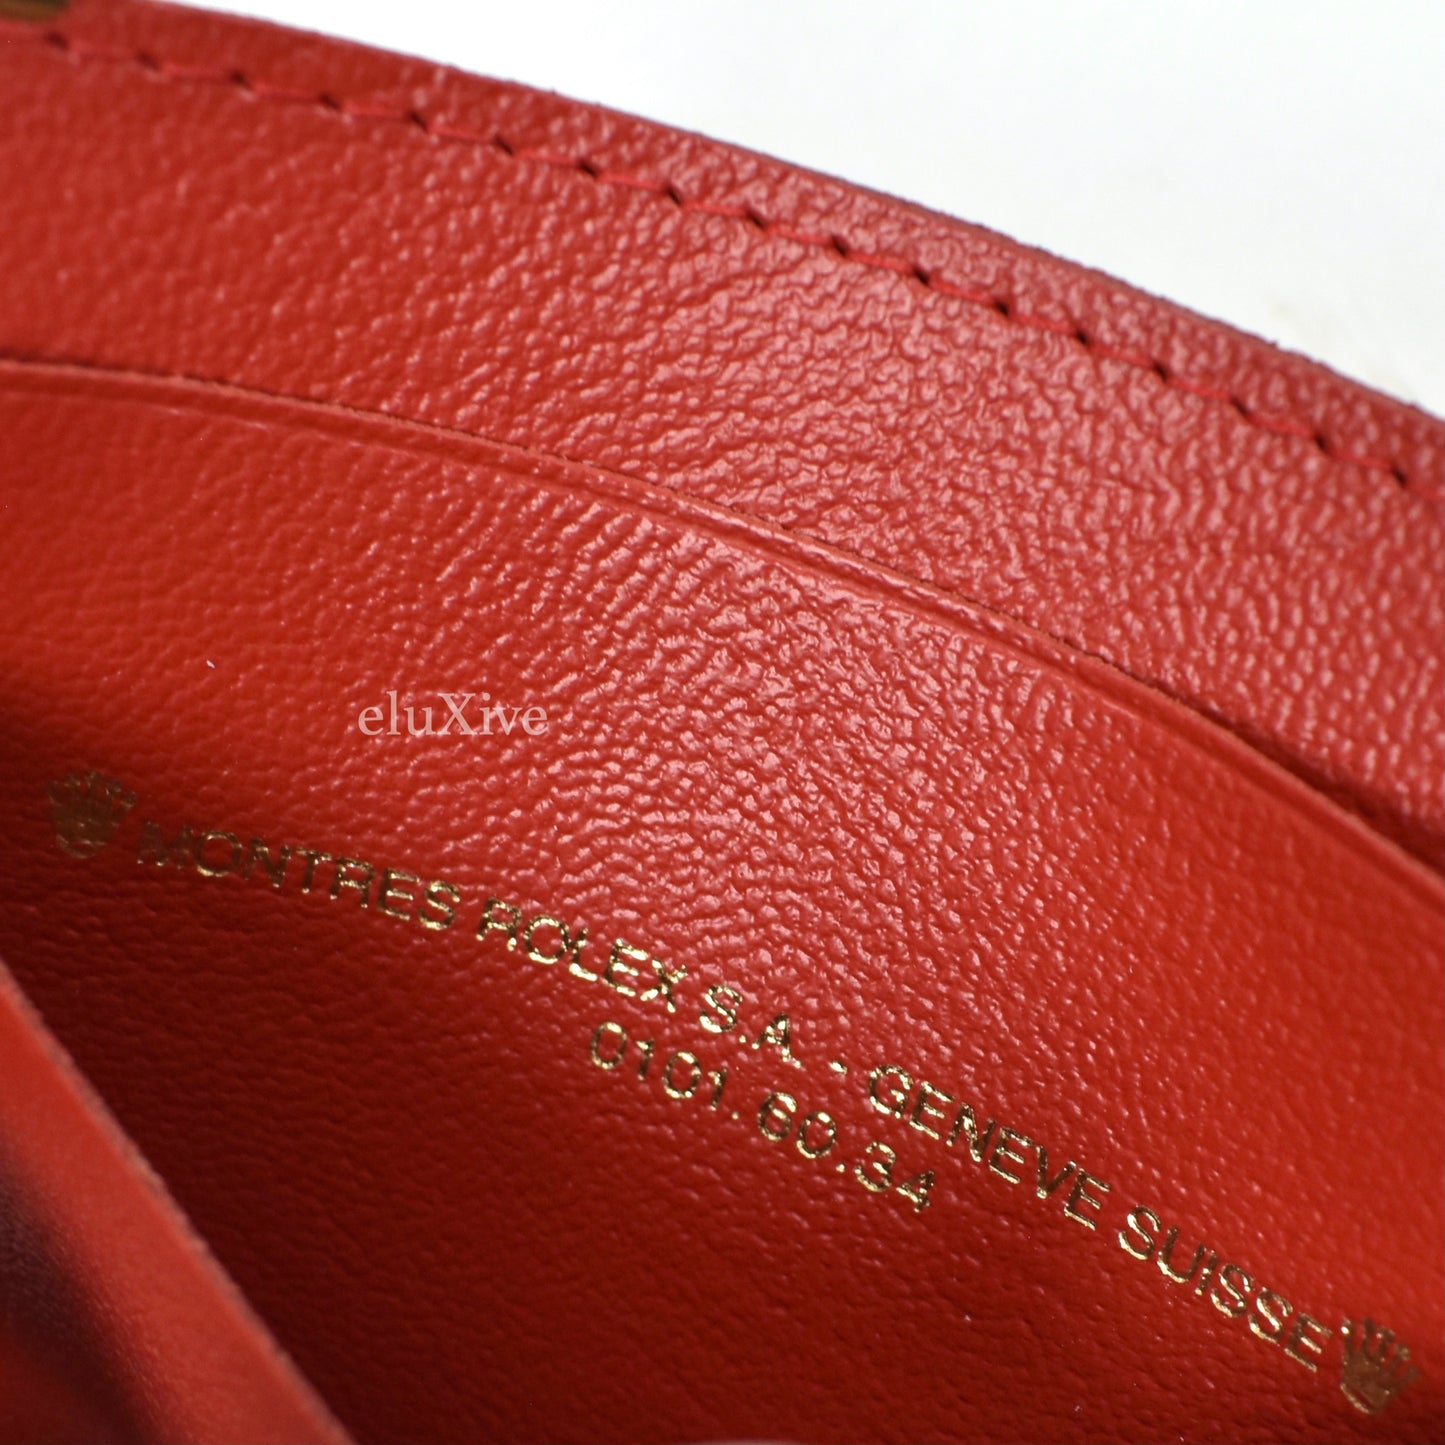 Rolex - Dark Red Leather Card Case